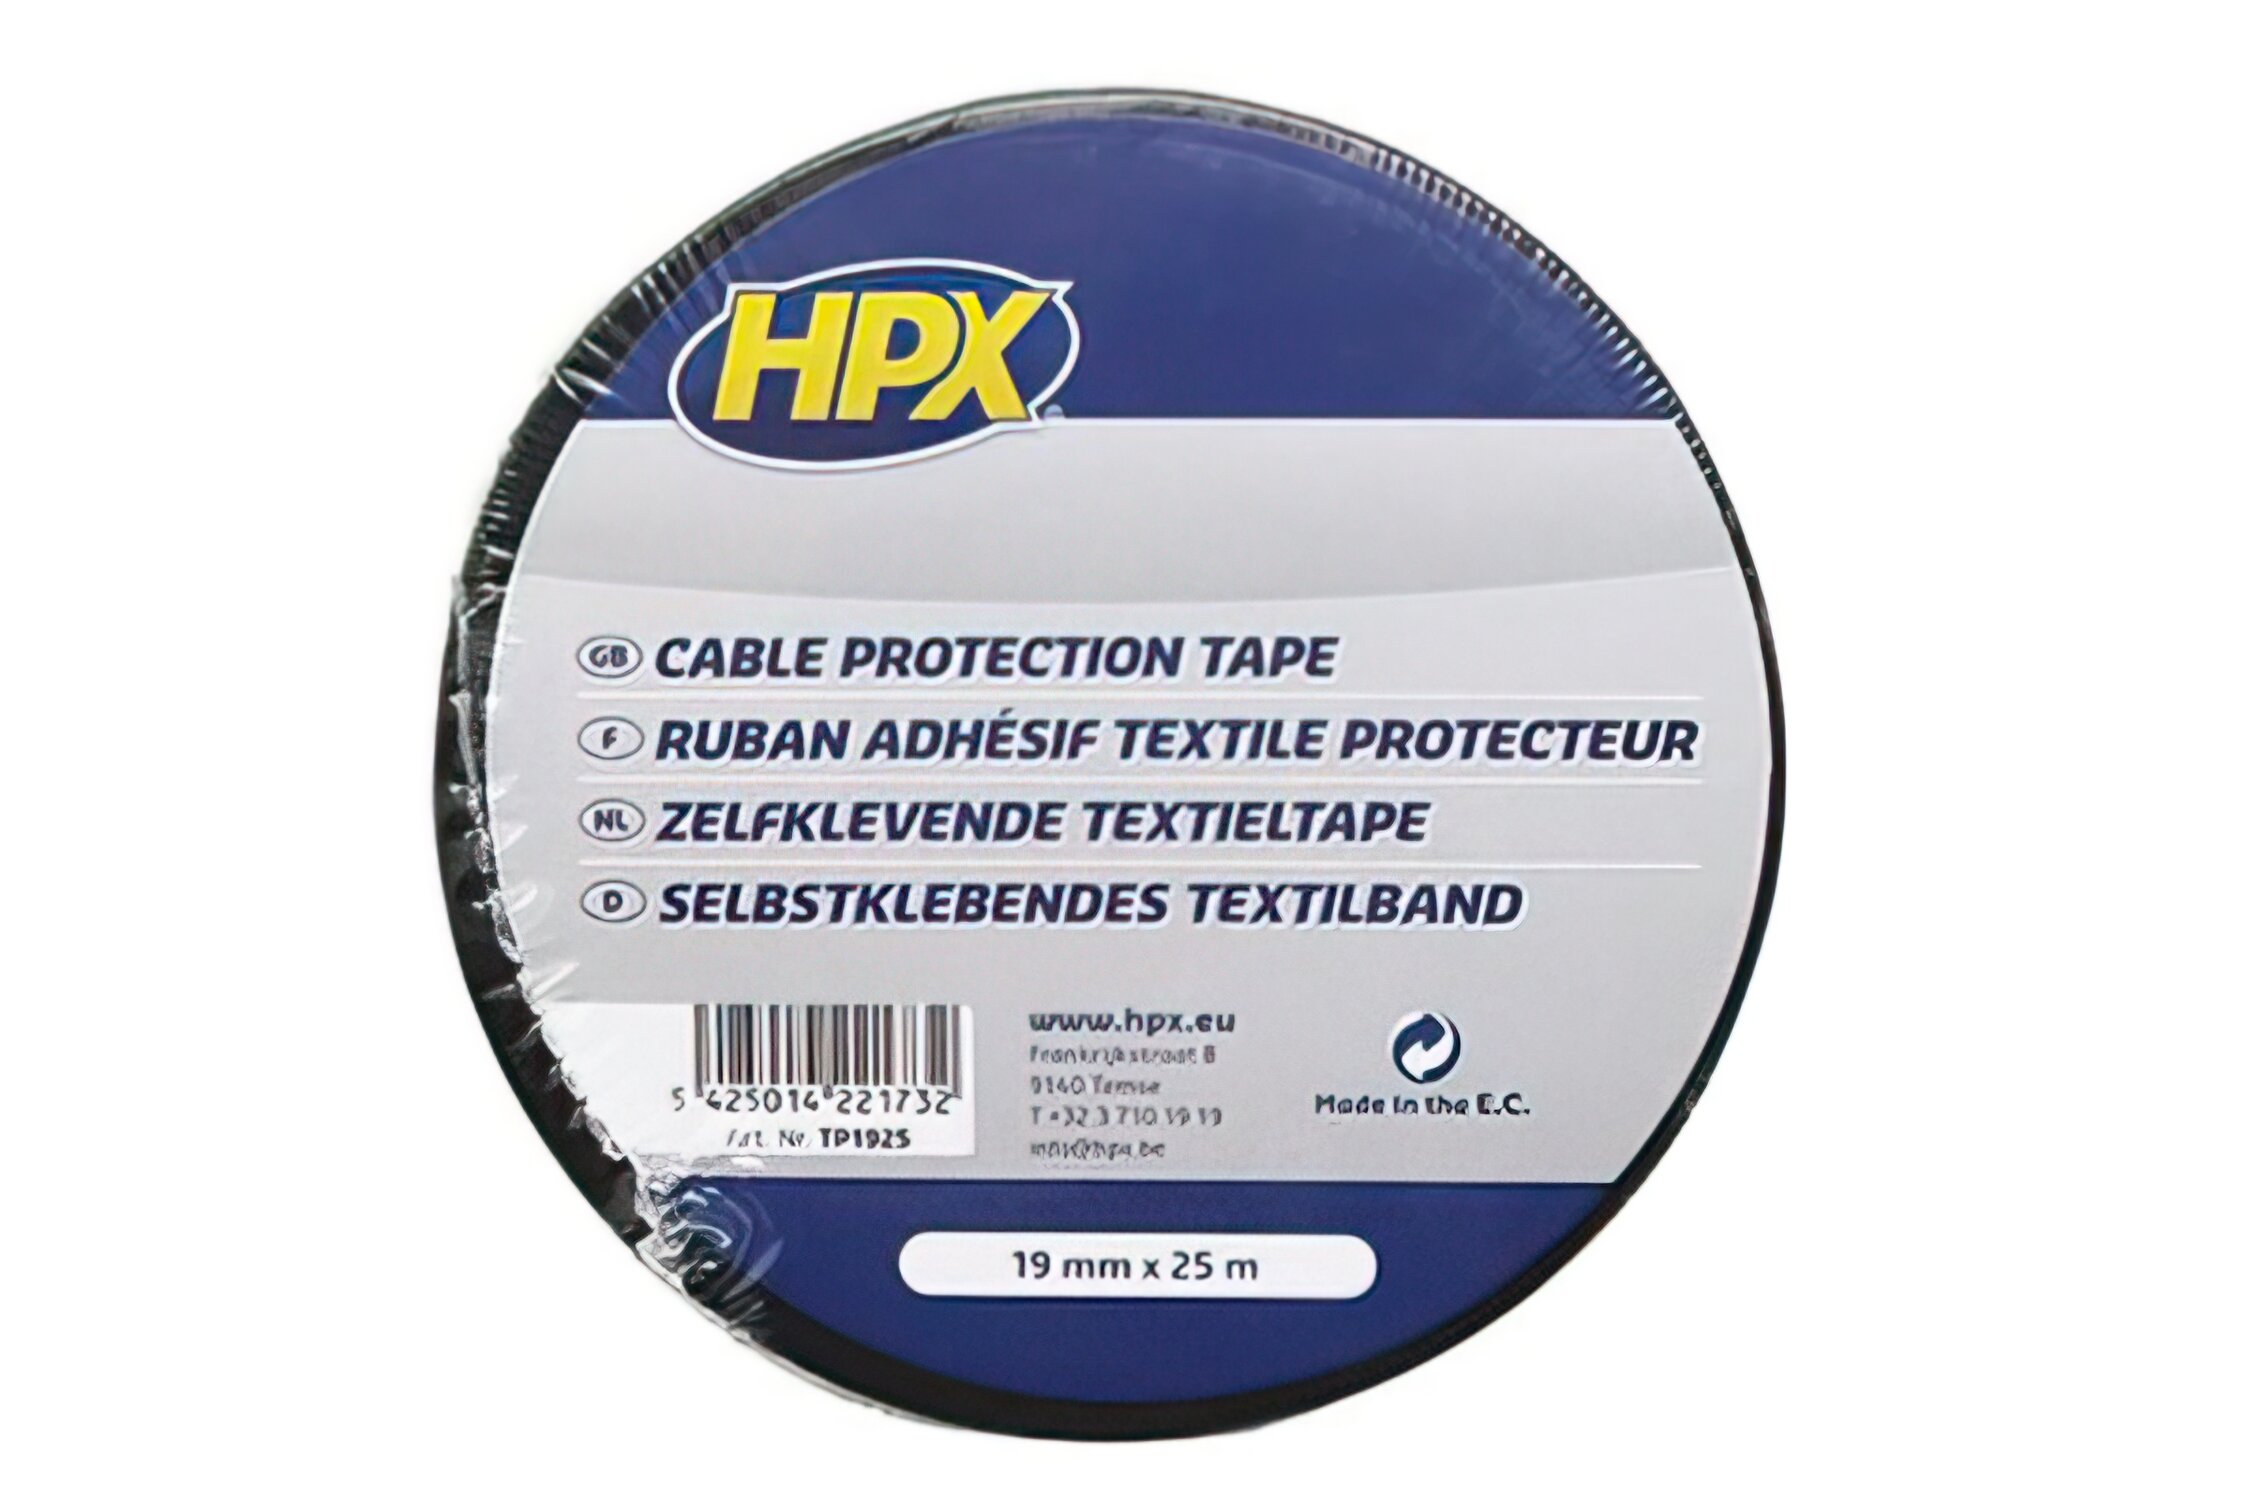 Ruban adhésif textile isolent noir 19 mm x 25m HPX TP1925